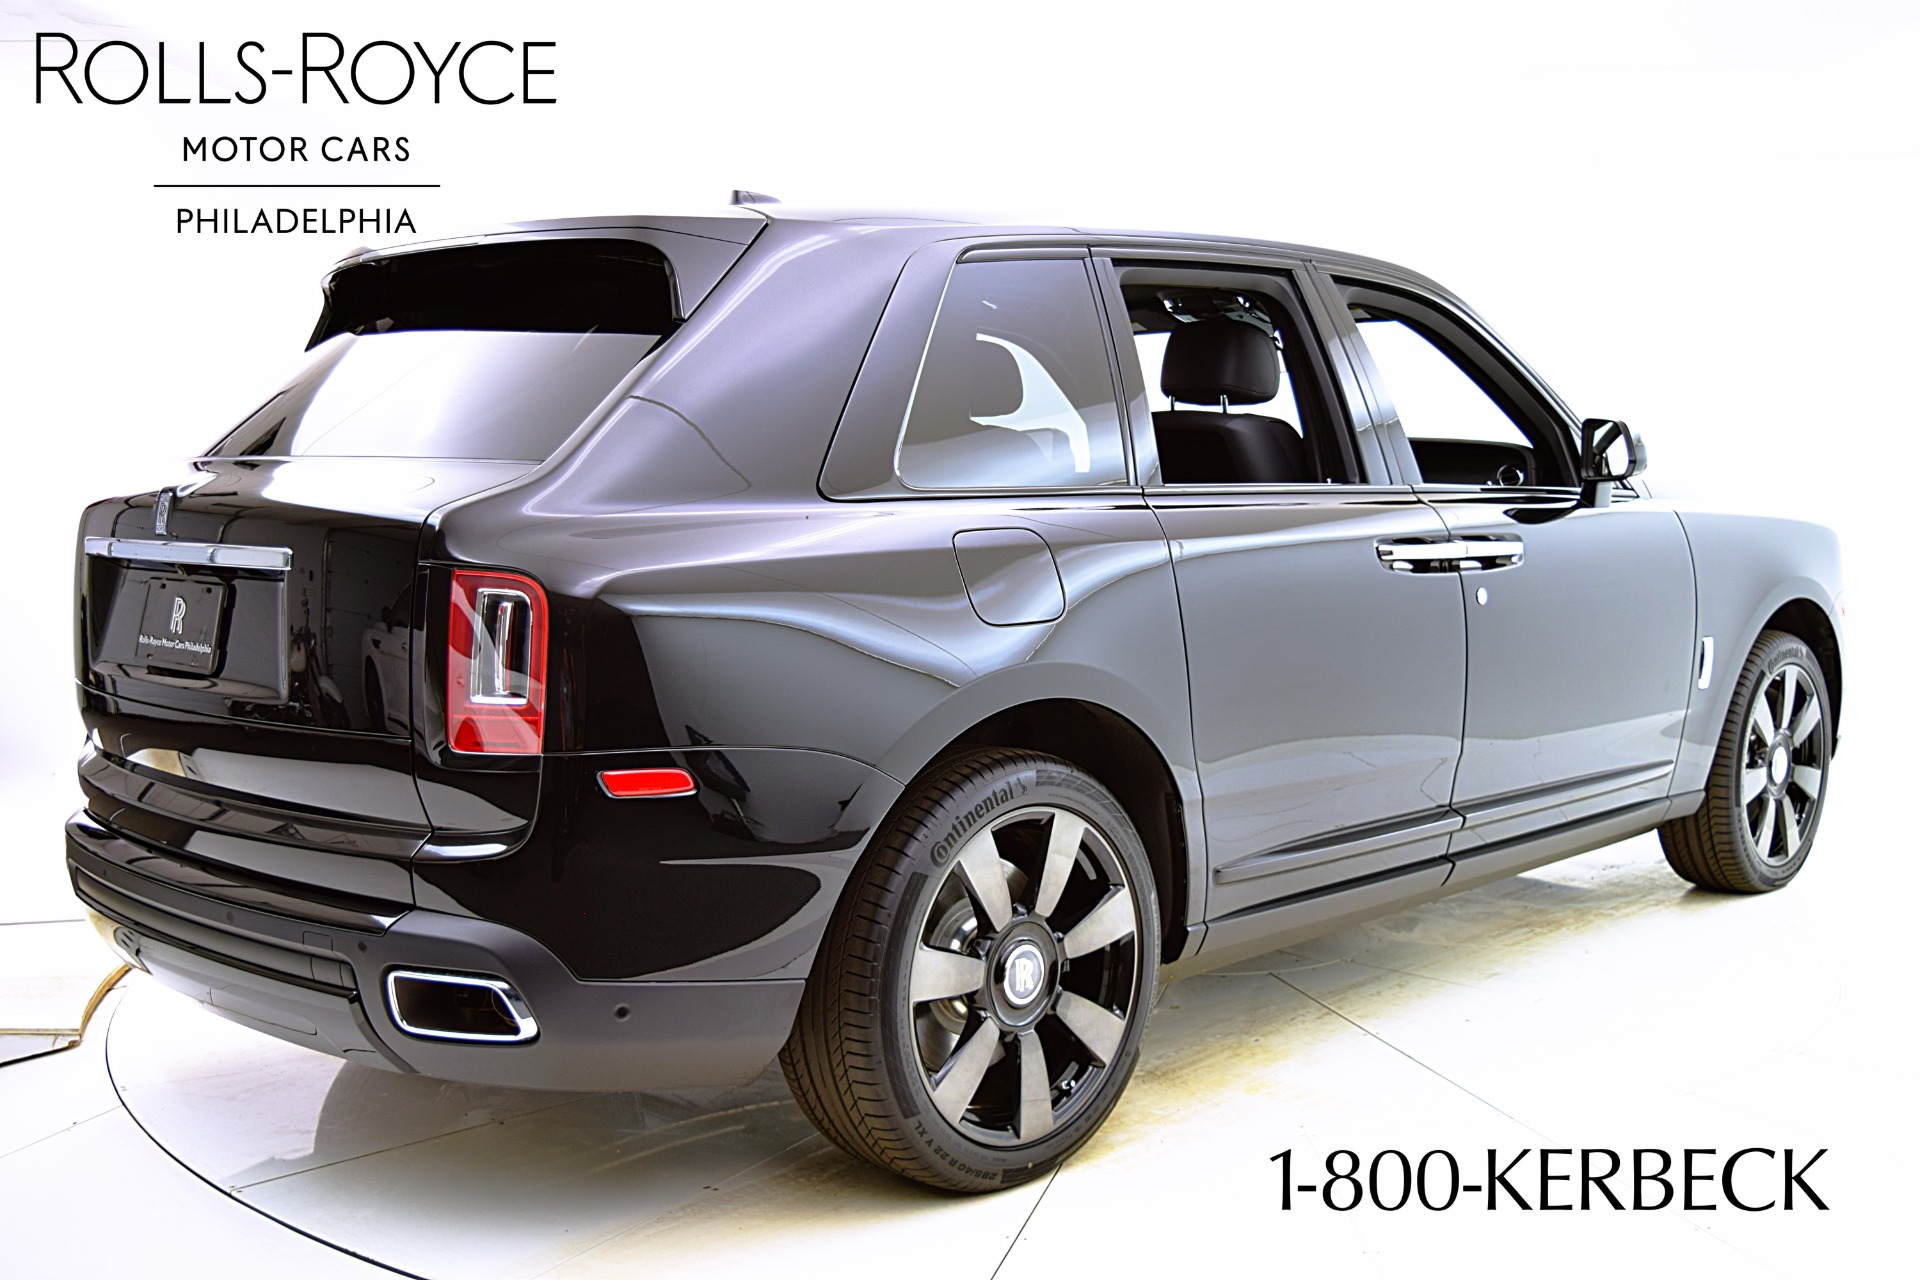 New 2021 Rolls-Royce Cullinan For Sale ($375,900)  Rolls-Royce Motor Cars  Philadelphia Stock #21R113